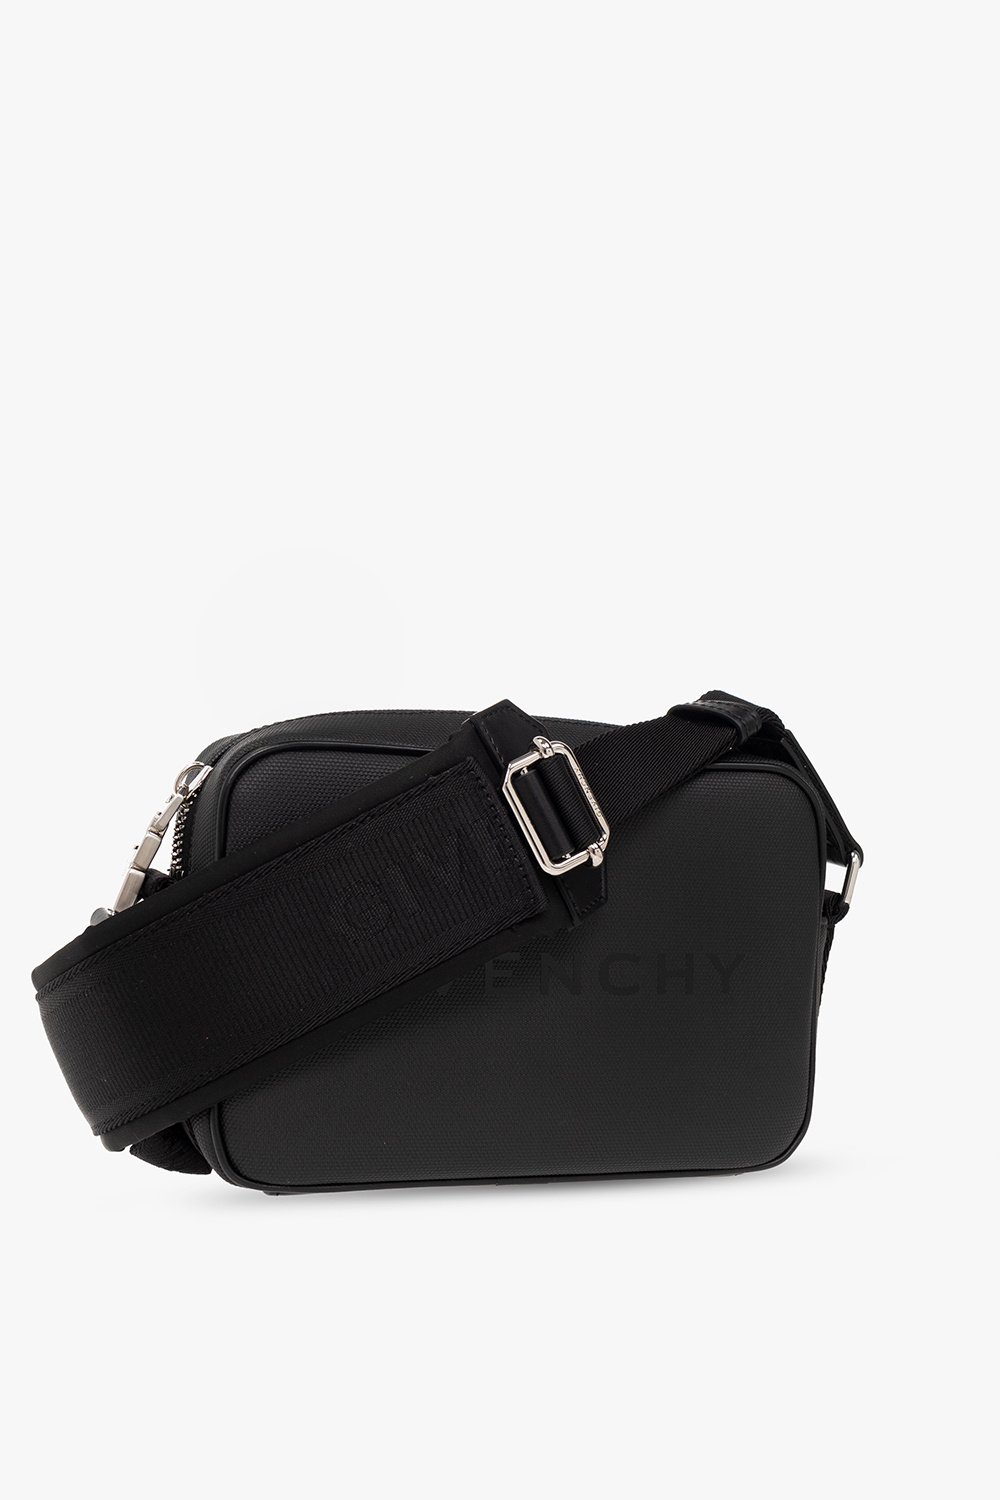 Givenchy Shoulder bag with logo